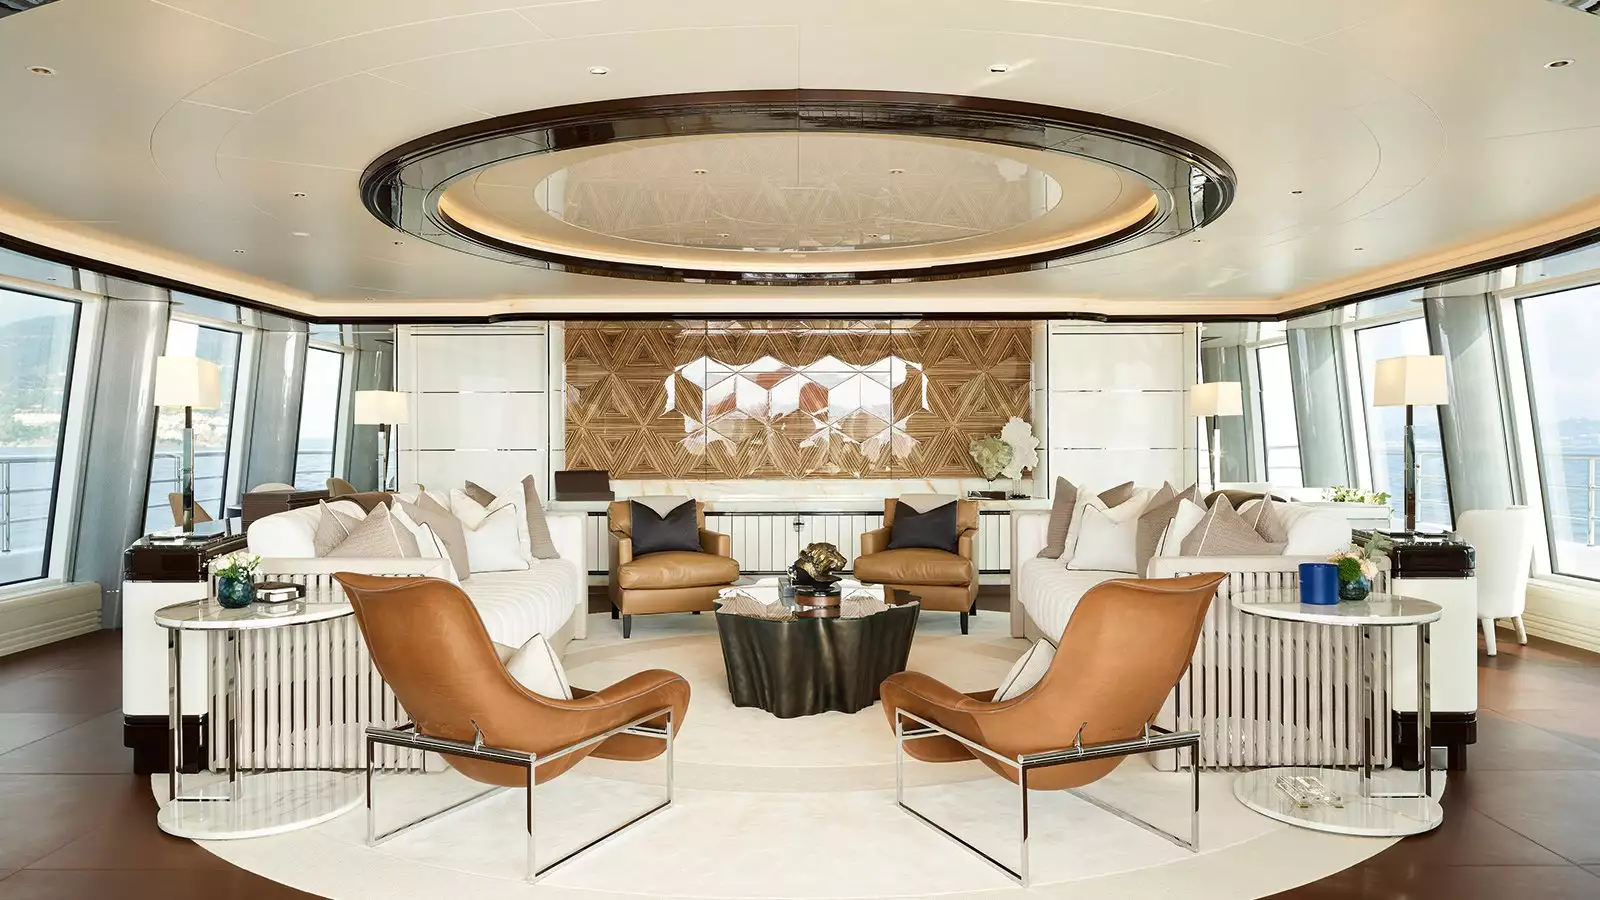 Interiore dell'yacht di progettazione dell'argano di Andrew